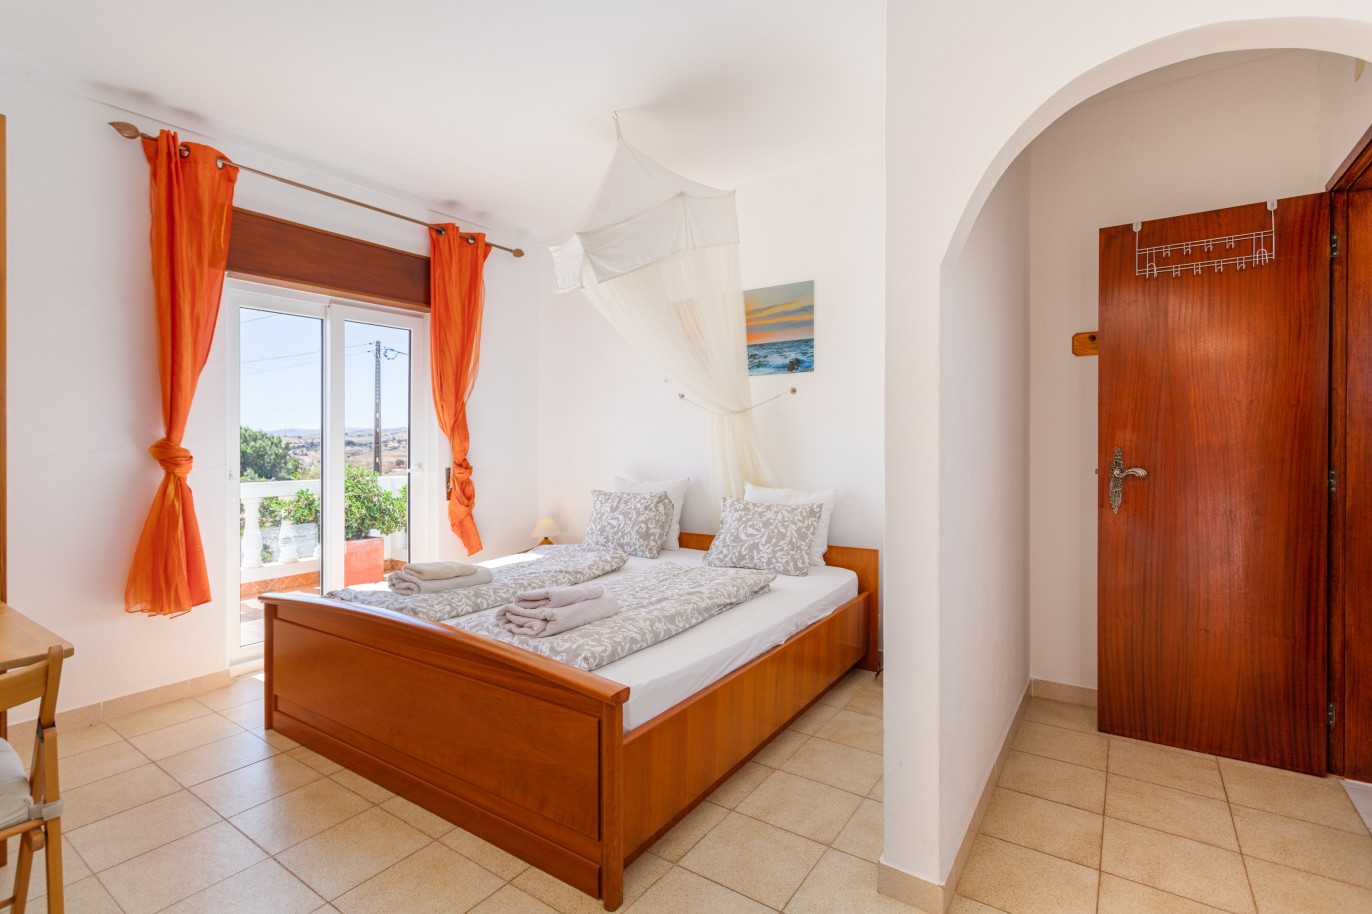 6 Bedroom Villa with pool for sale in Vila Nova de Cacela, Algarve_226520